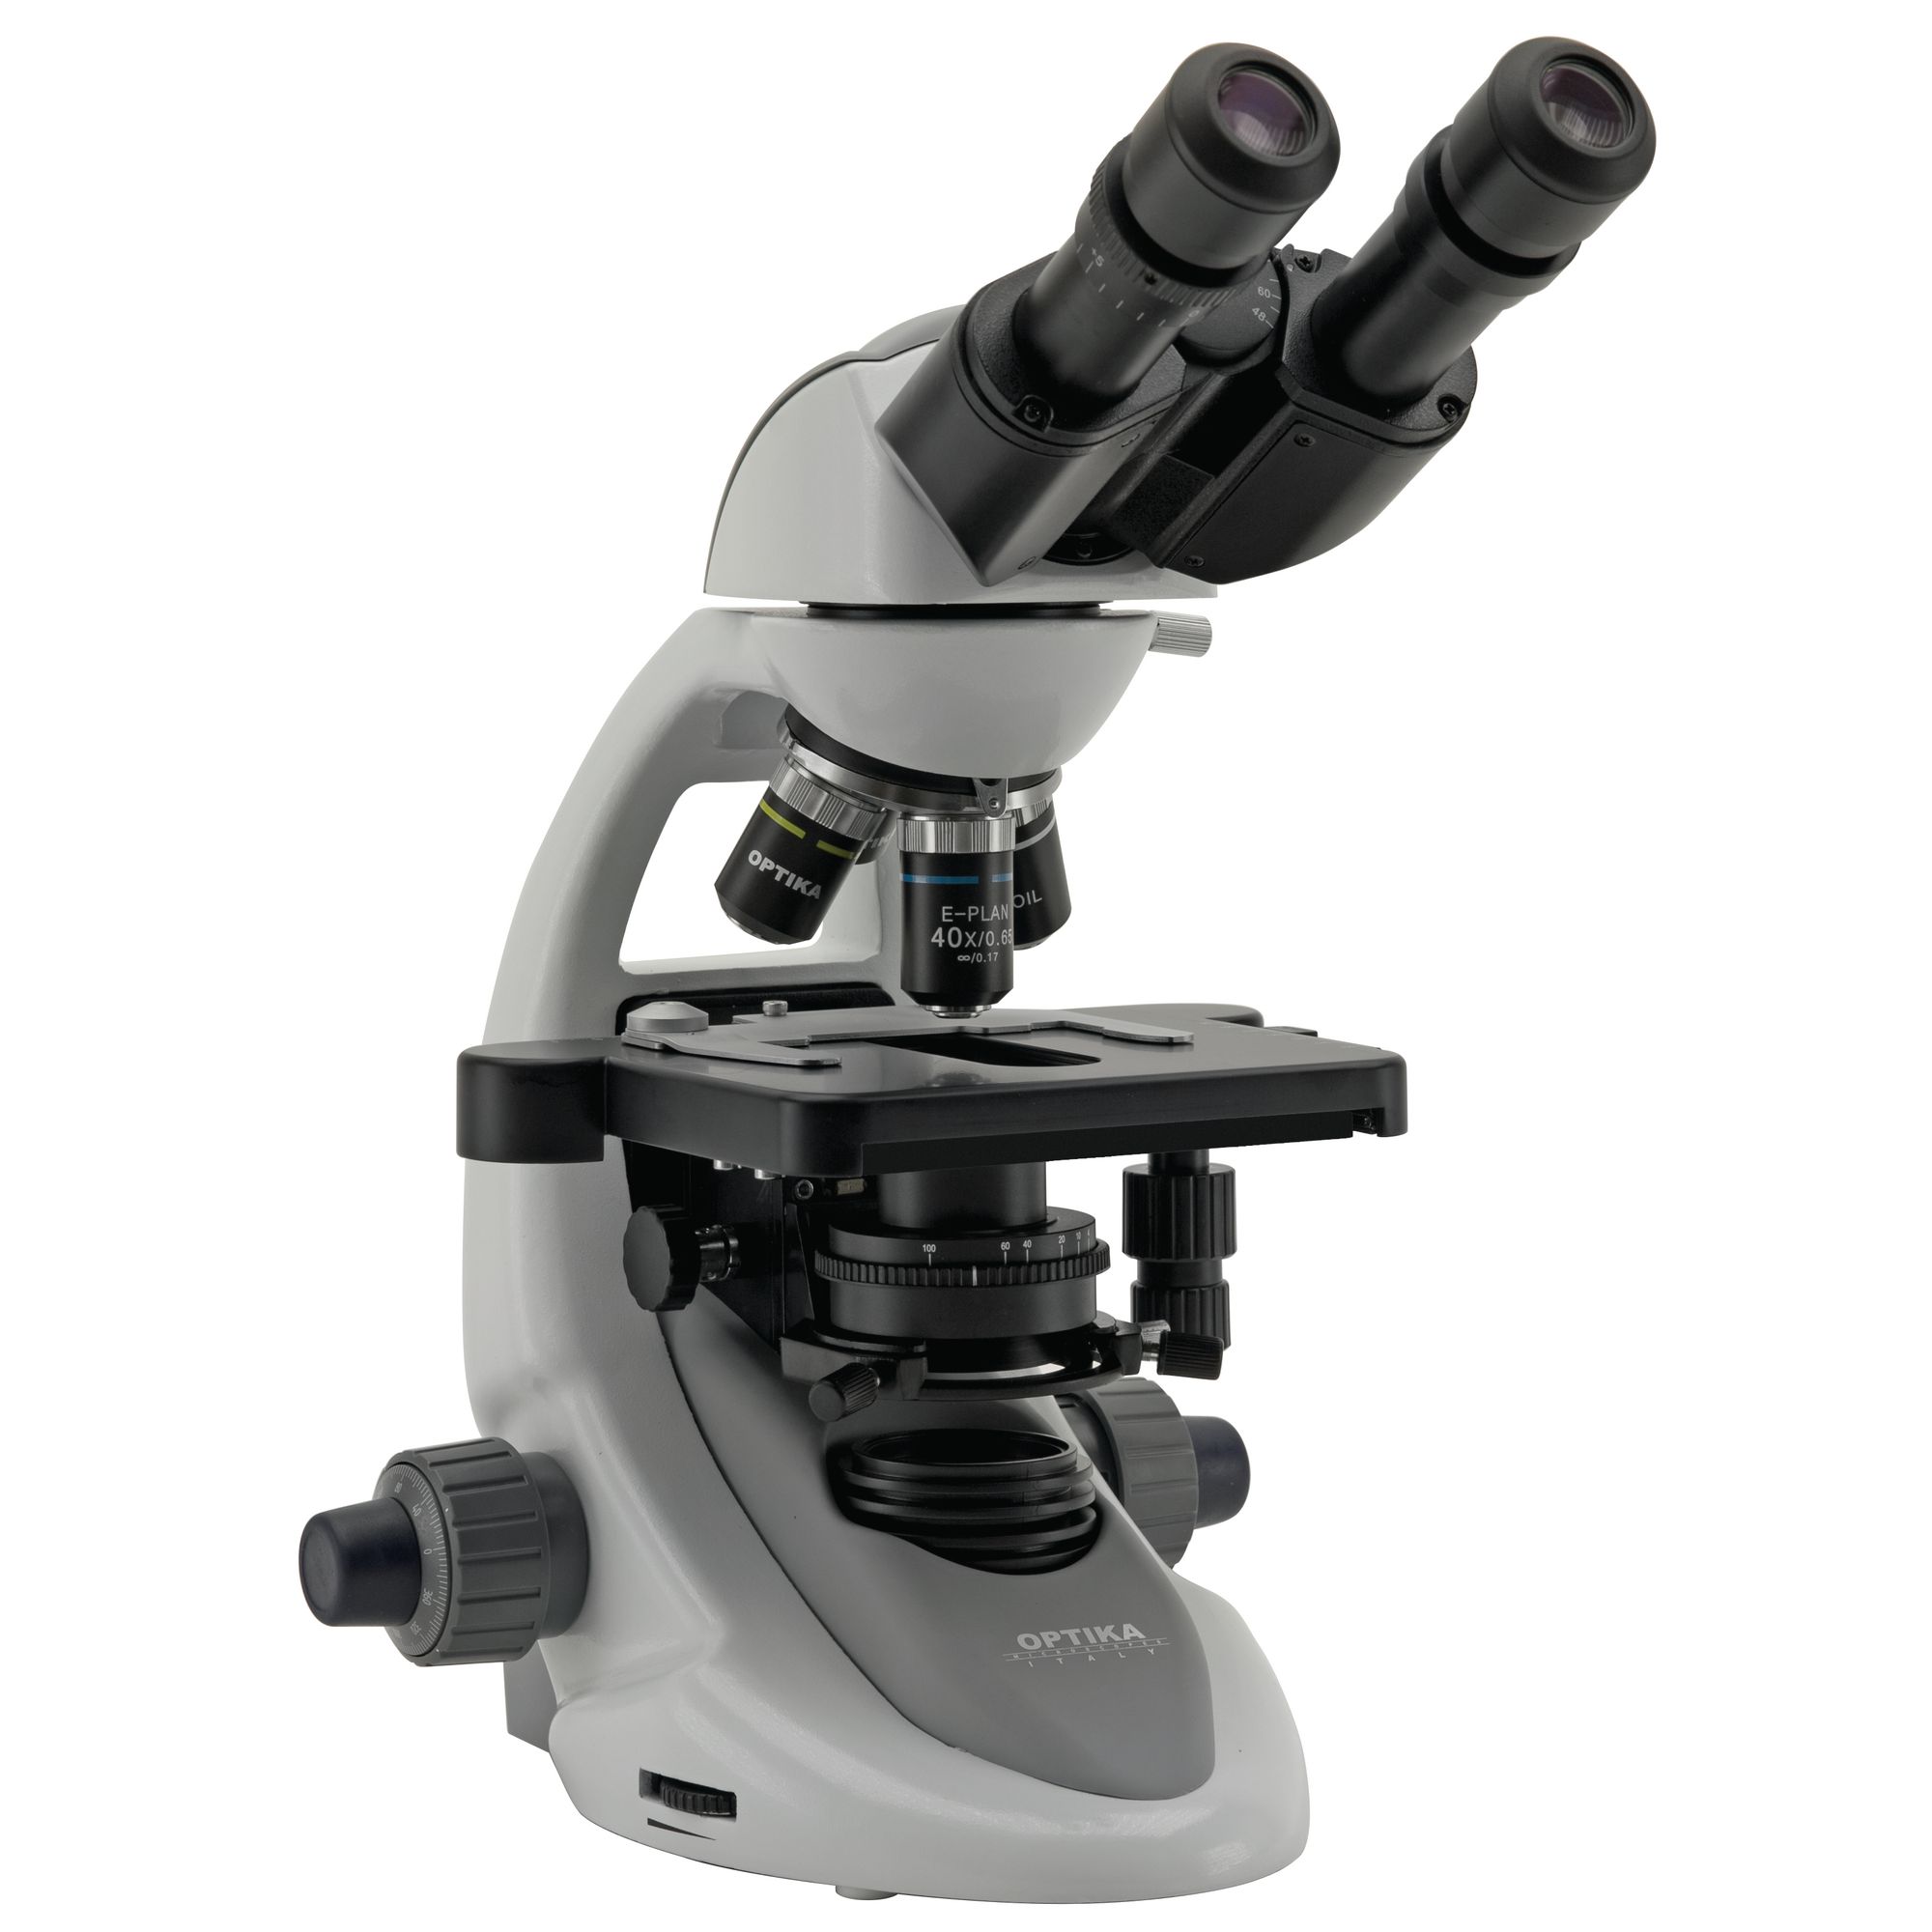 Opkita B-292pli Binocular Microscope Led